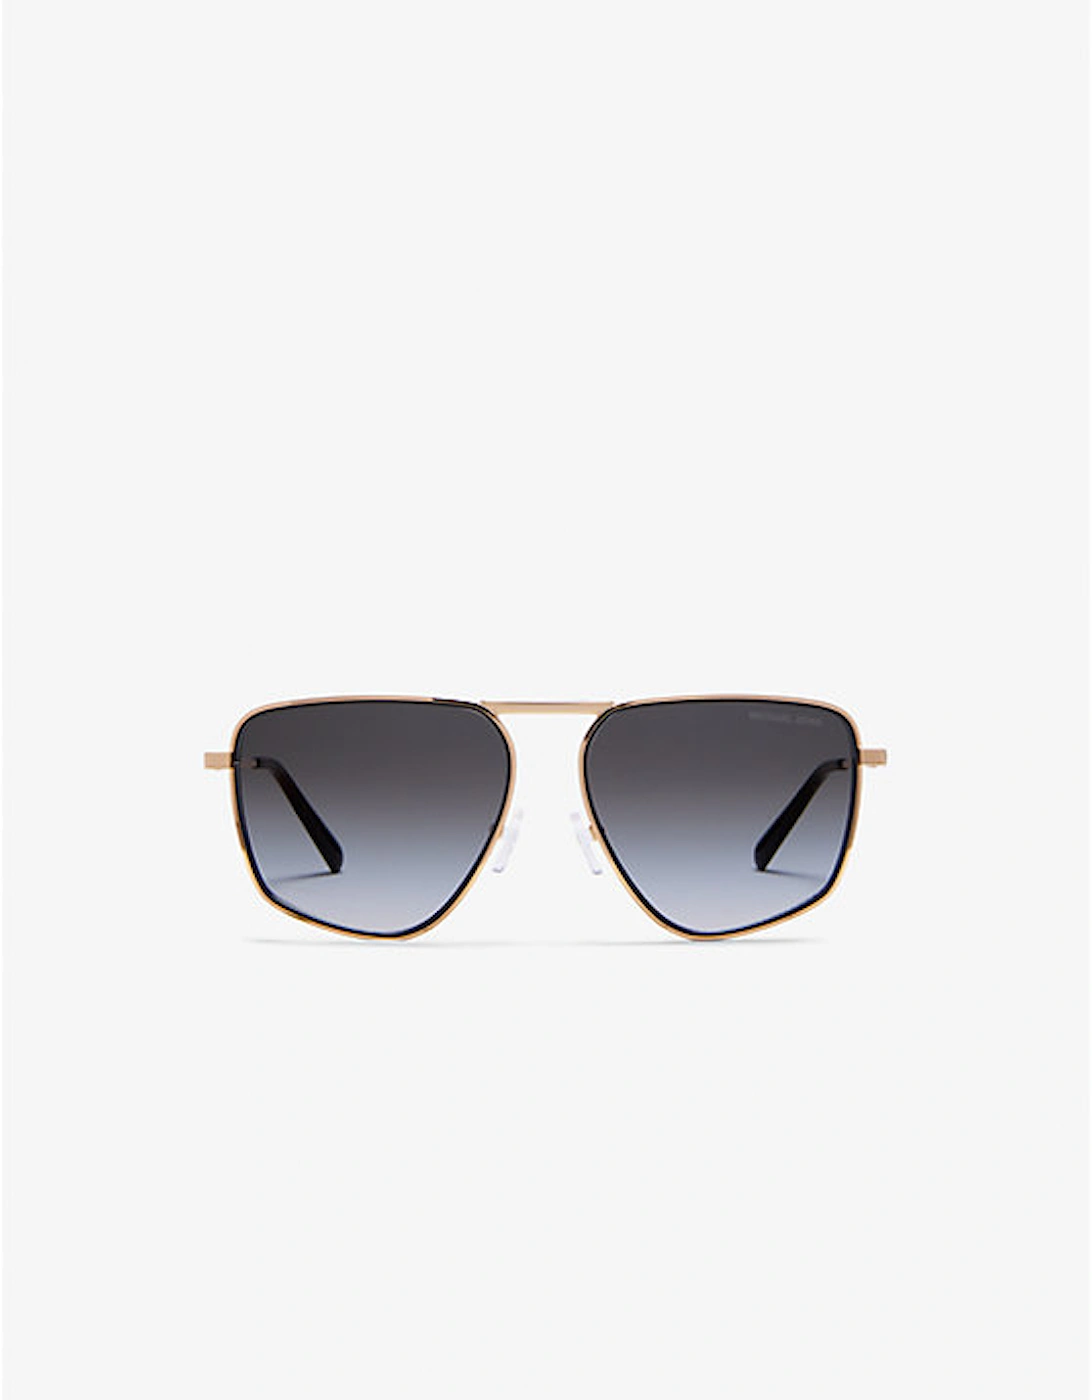 Silverton Sunglasses, 2 of 1